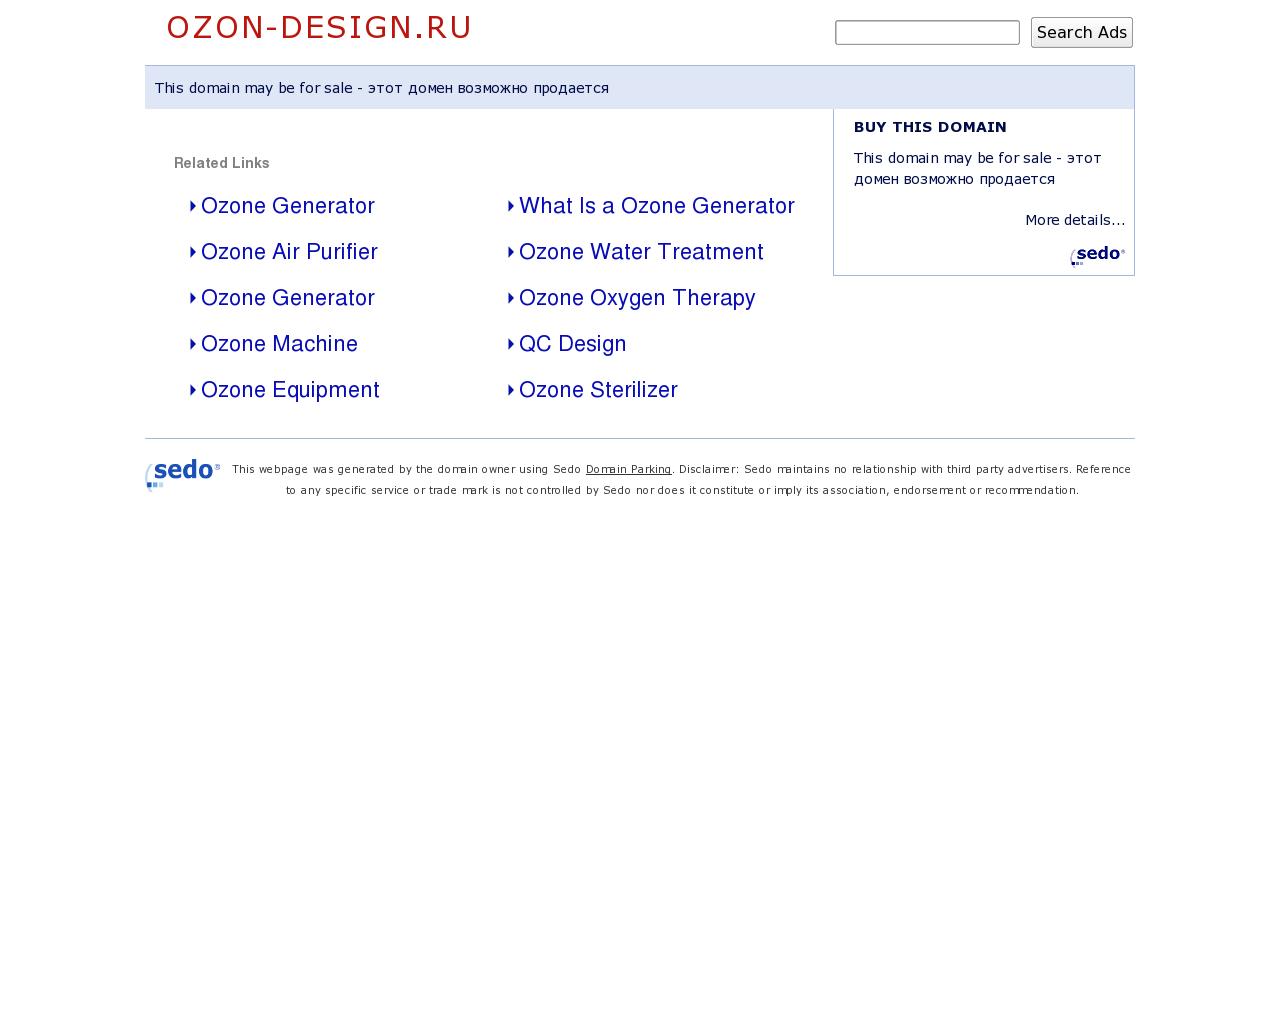 Изображение сайта ozon-design.ru в разрешении 1280x1024